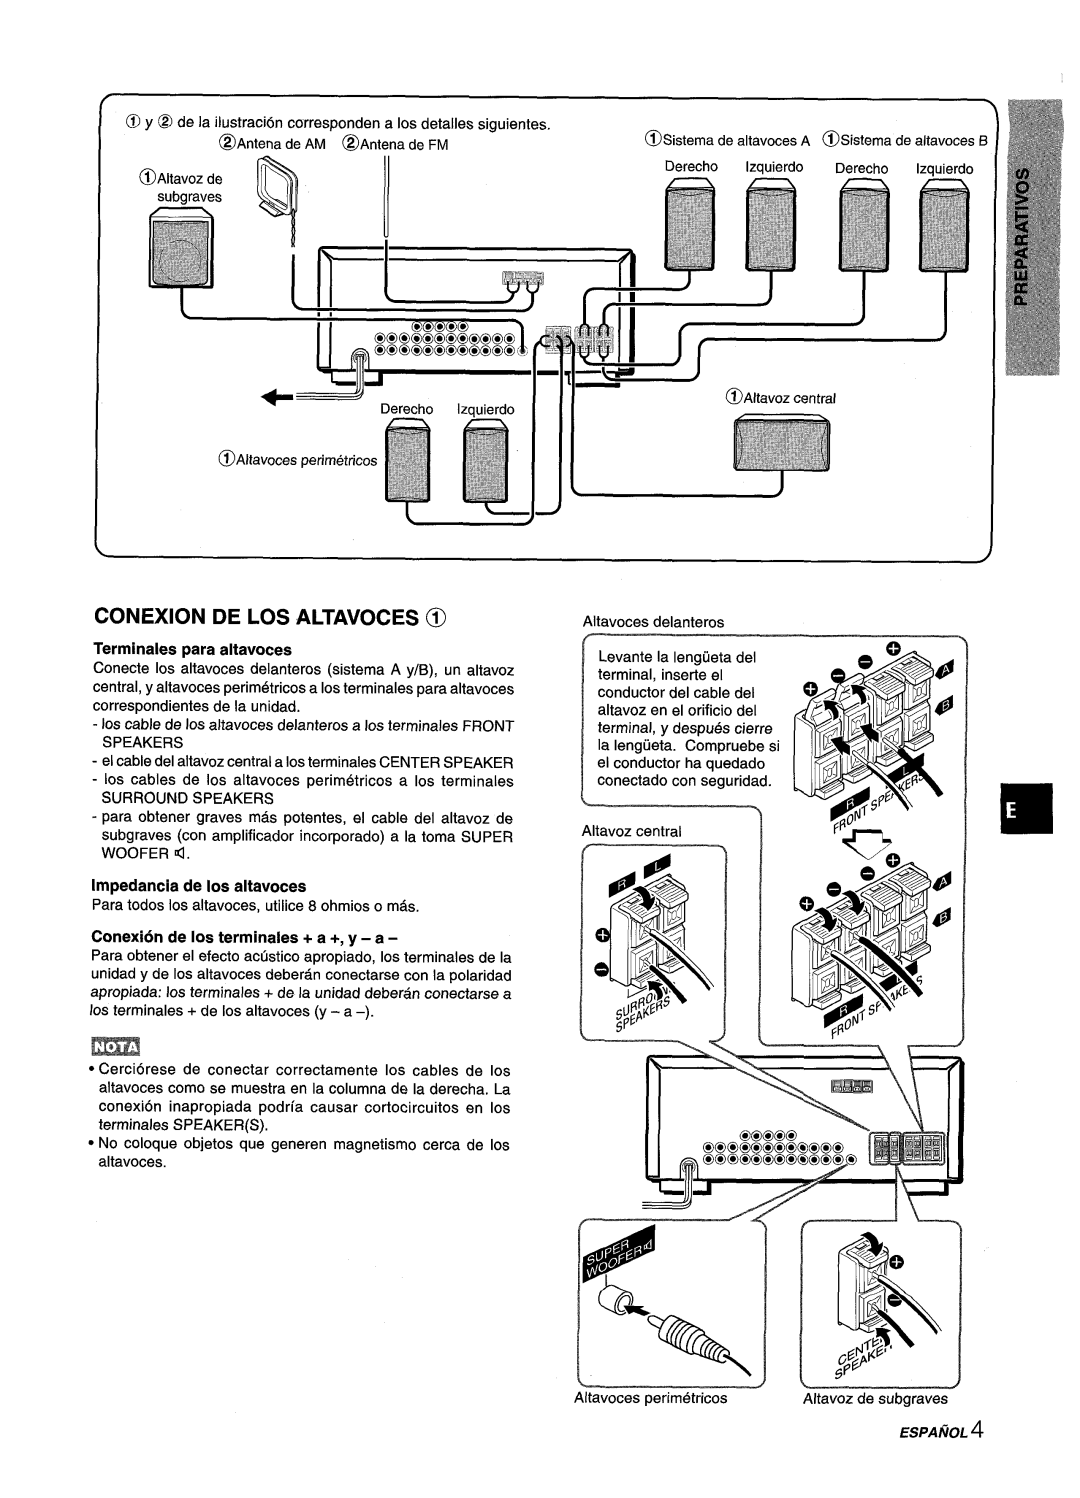 Aiwa AV-D25 manual Conexion De Los Altavoces @, Terminals para altavoces, Impedancia de Ios altavoces 